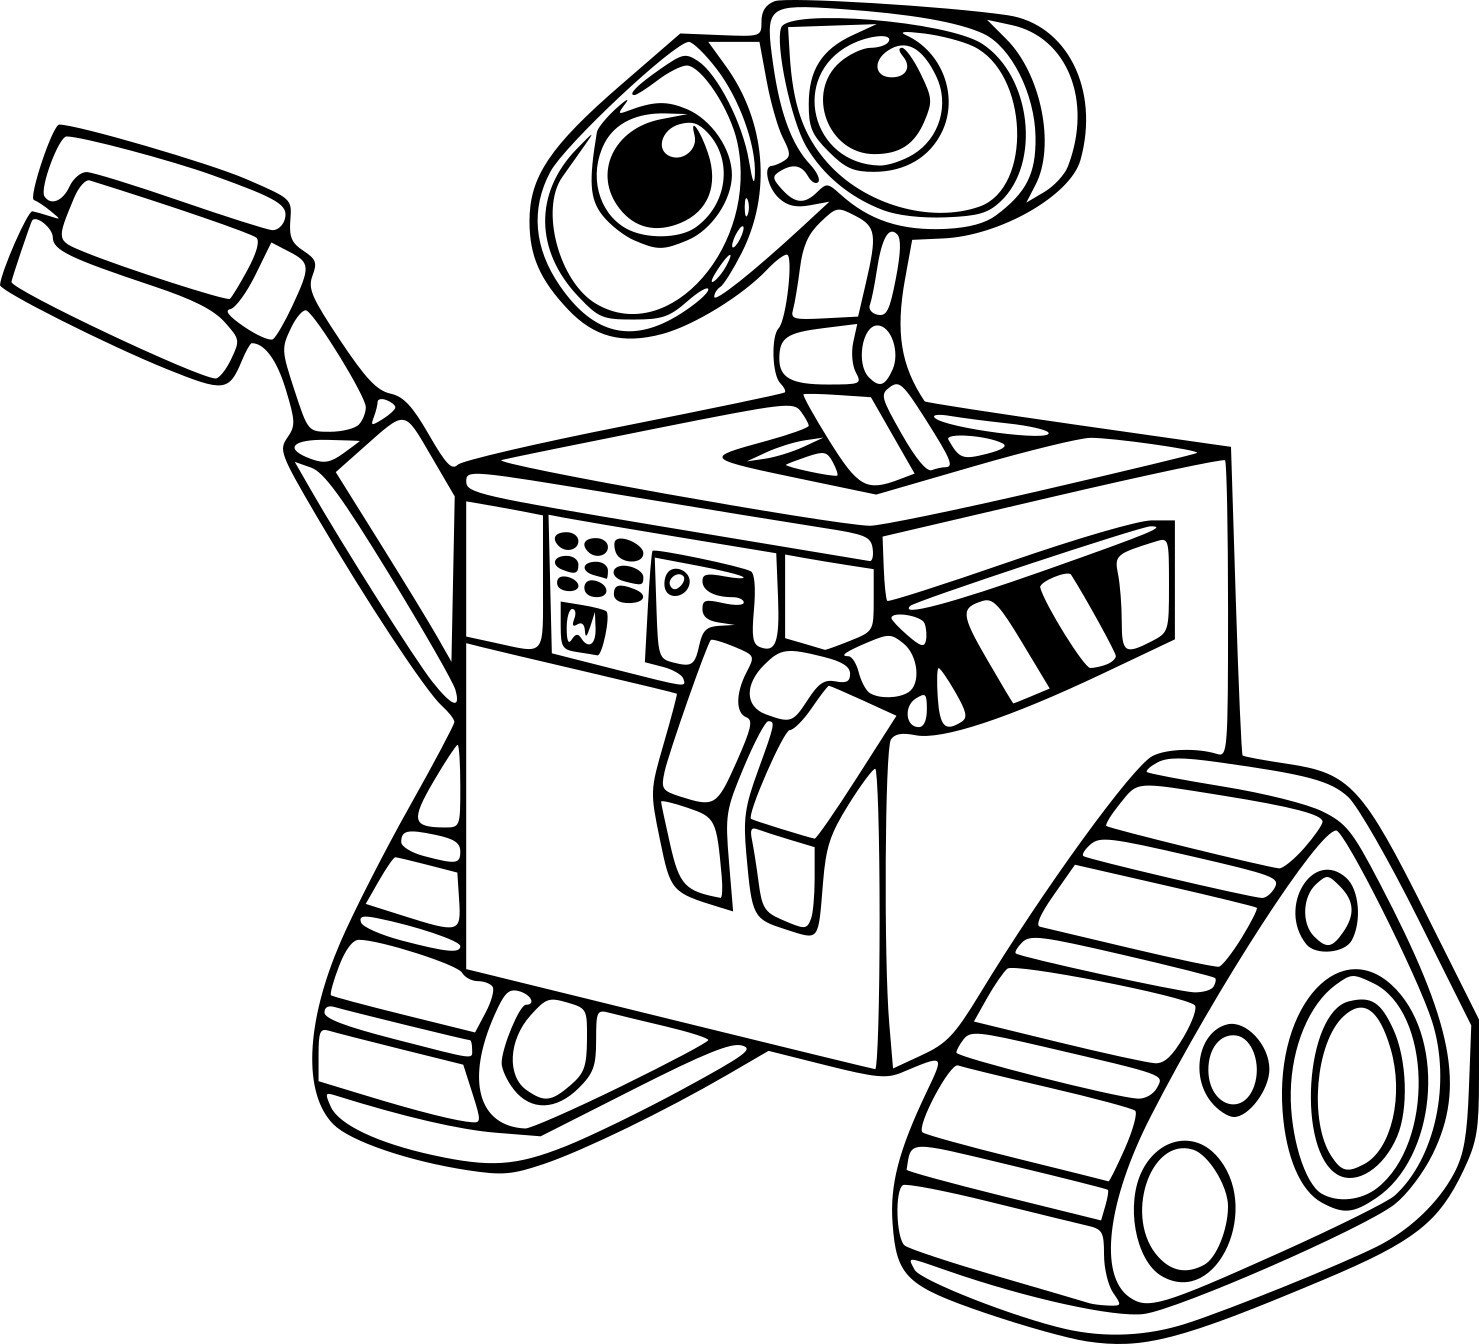 Раскраска Два робота, скачать и распечатать раскраску раздела Роботы